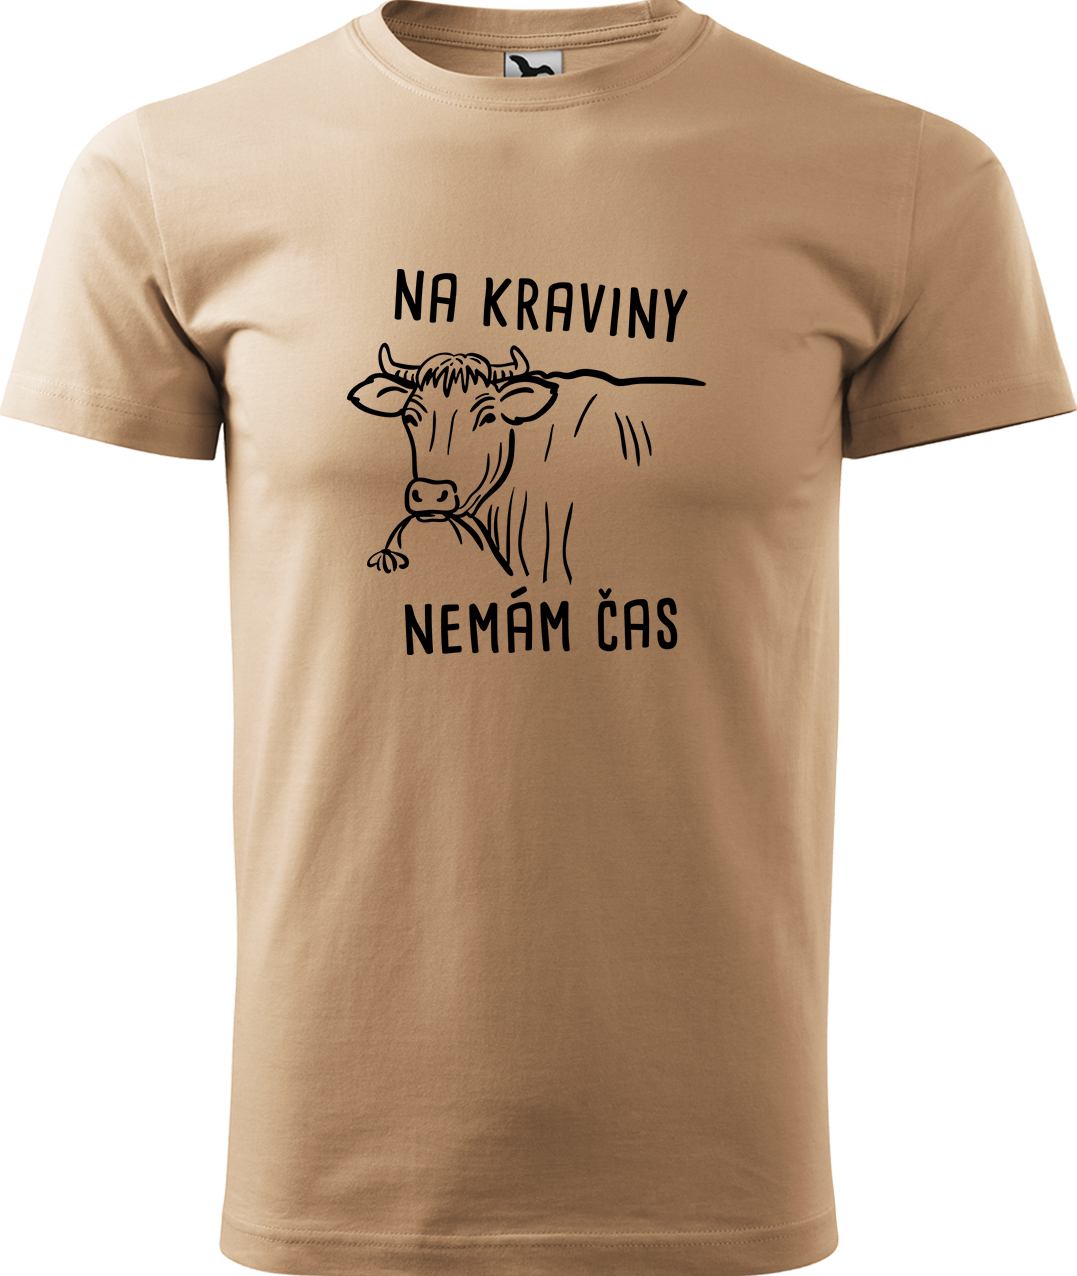 Pánské tričko s krávou - Na kraviny nemám čas Velikost: XL, Barva: Písková (08), Střih: pánský